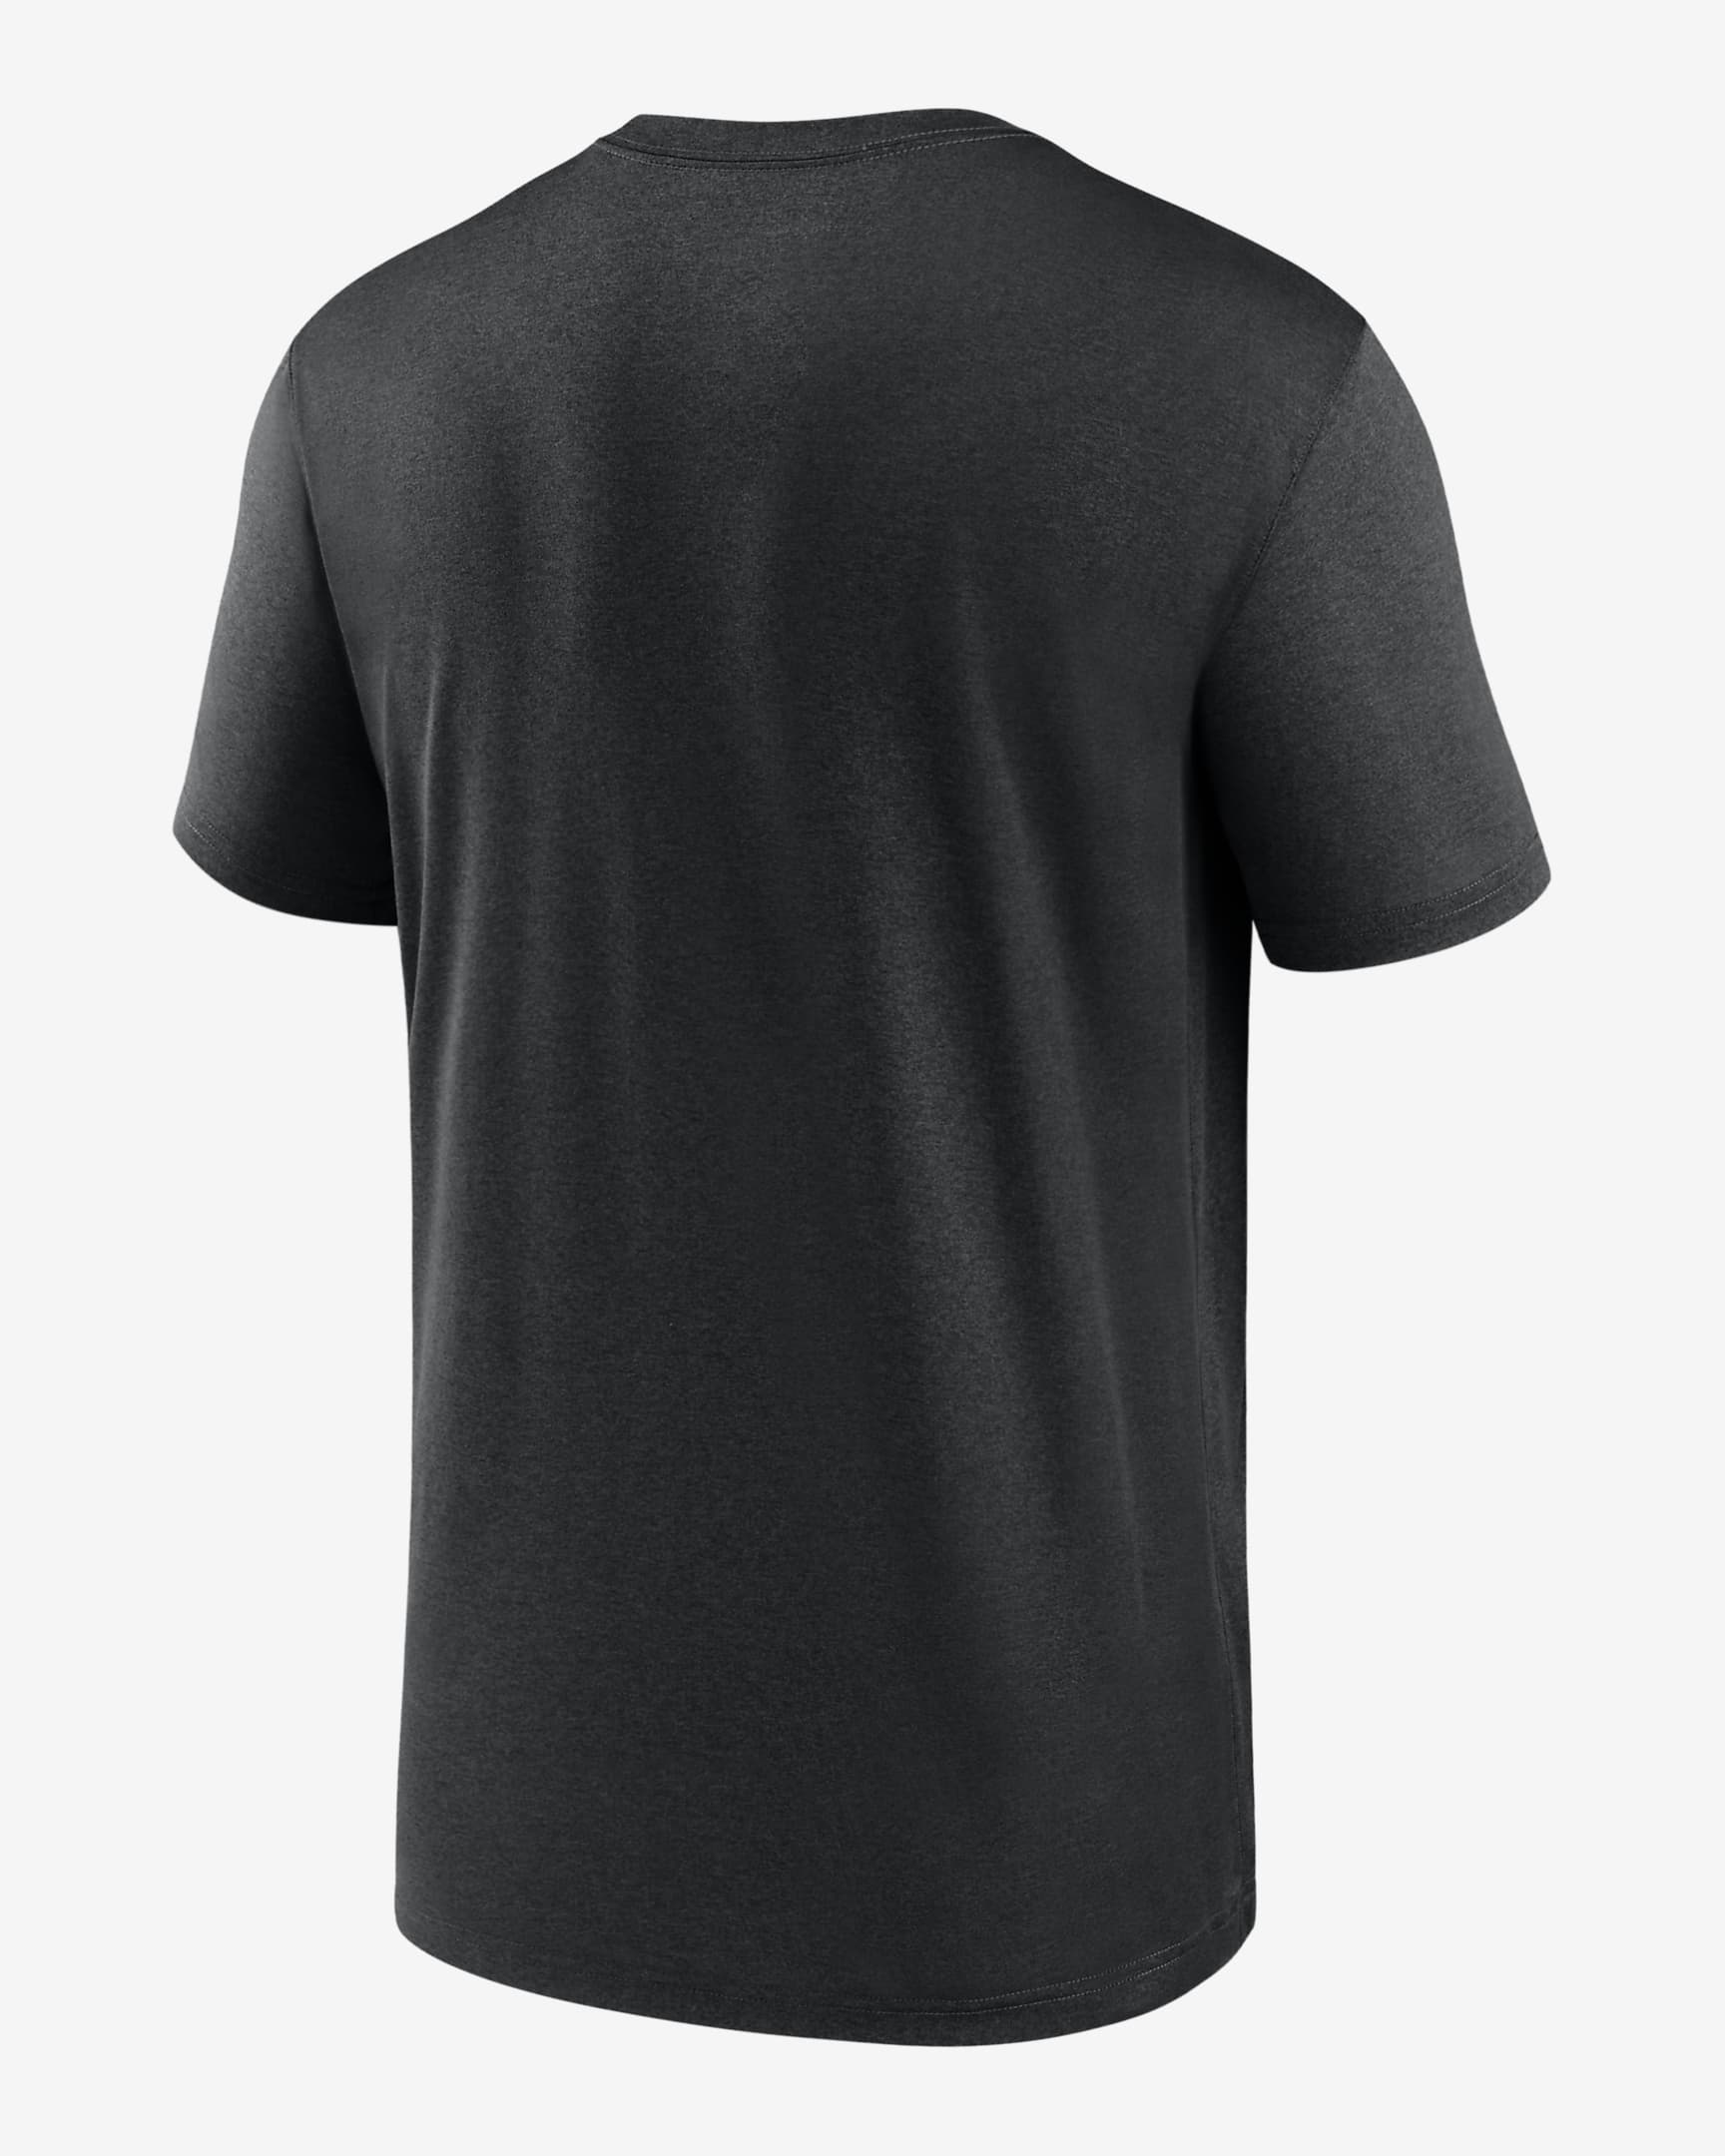 Nike Dri-FIT Logo Legend (NFL Baltimore Ravens) Men's T-Shirt. Nike.com